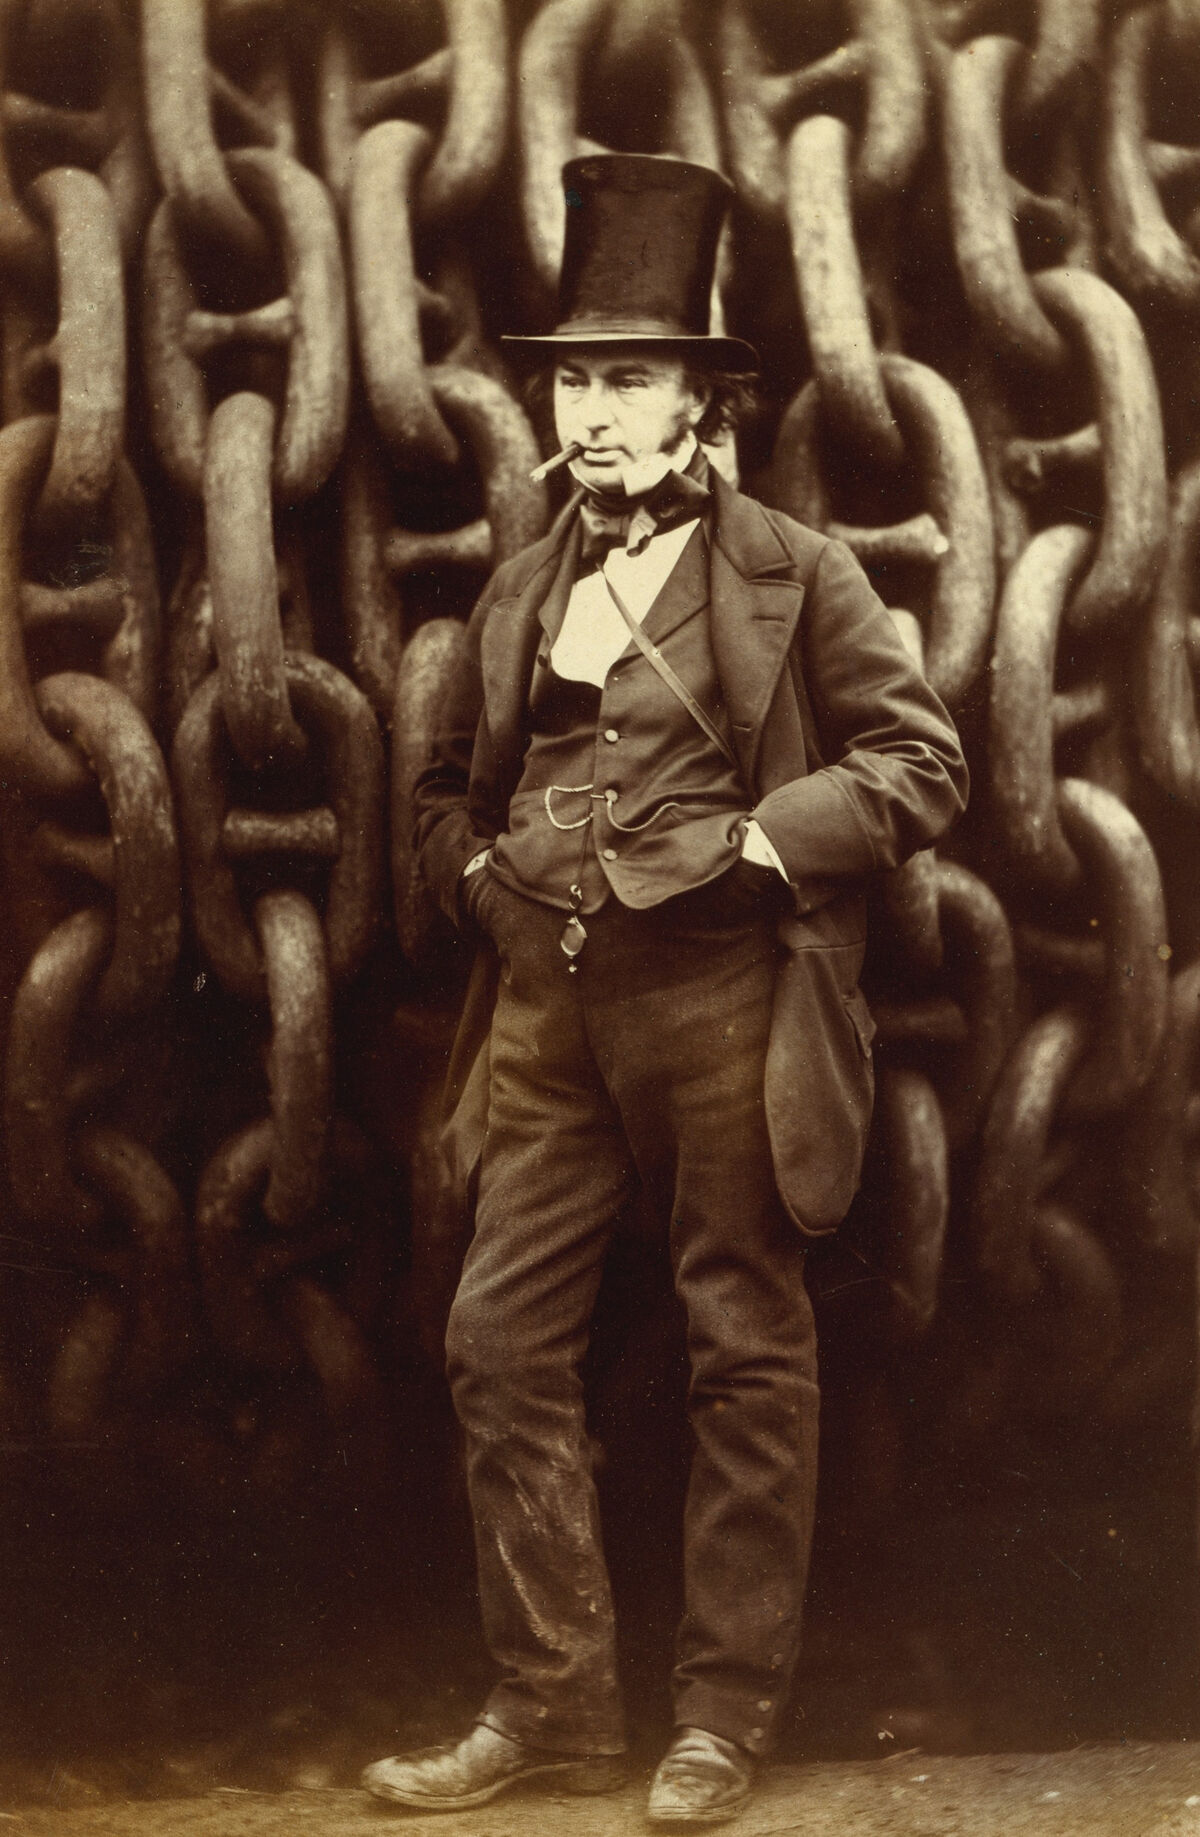 GFD 1/175: Isambard Kingdom Brunel vor den Ketten der «Great Eastern» (Fotografie von Robert Howlett, 1857)